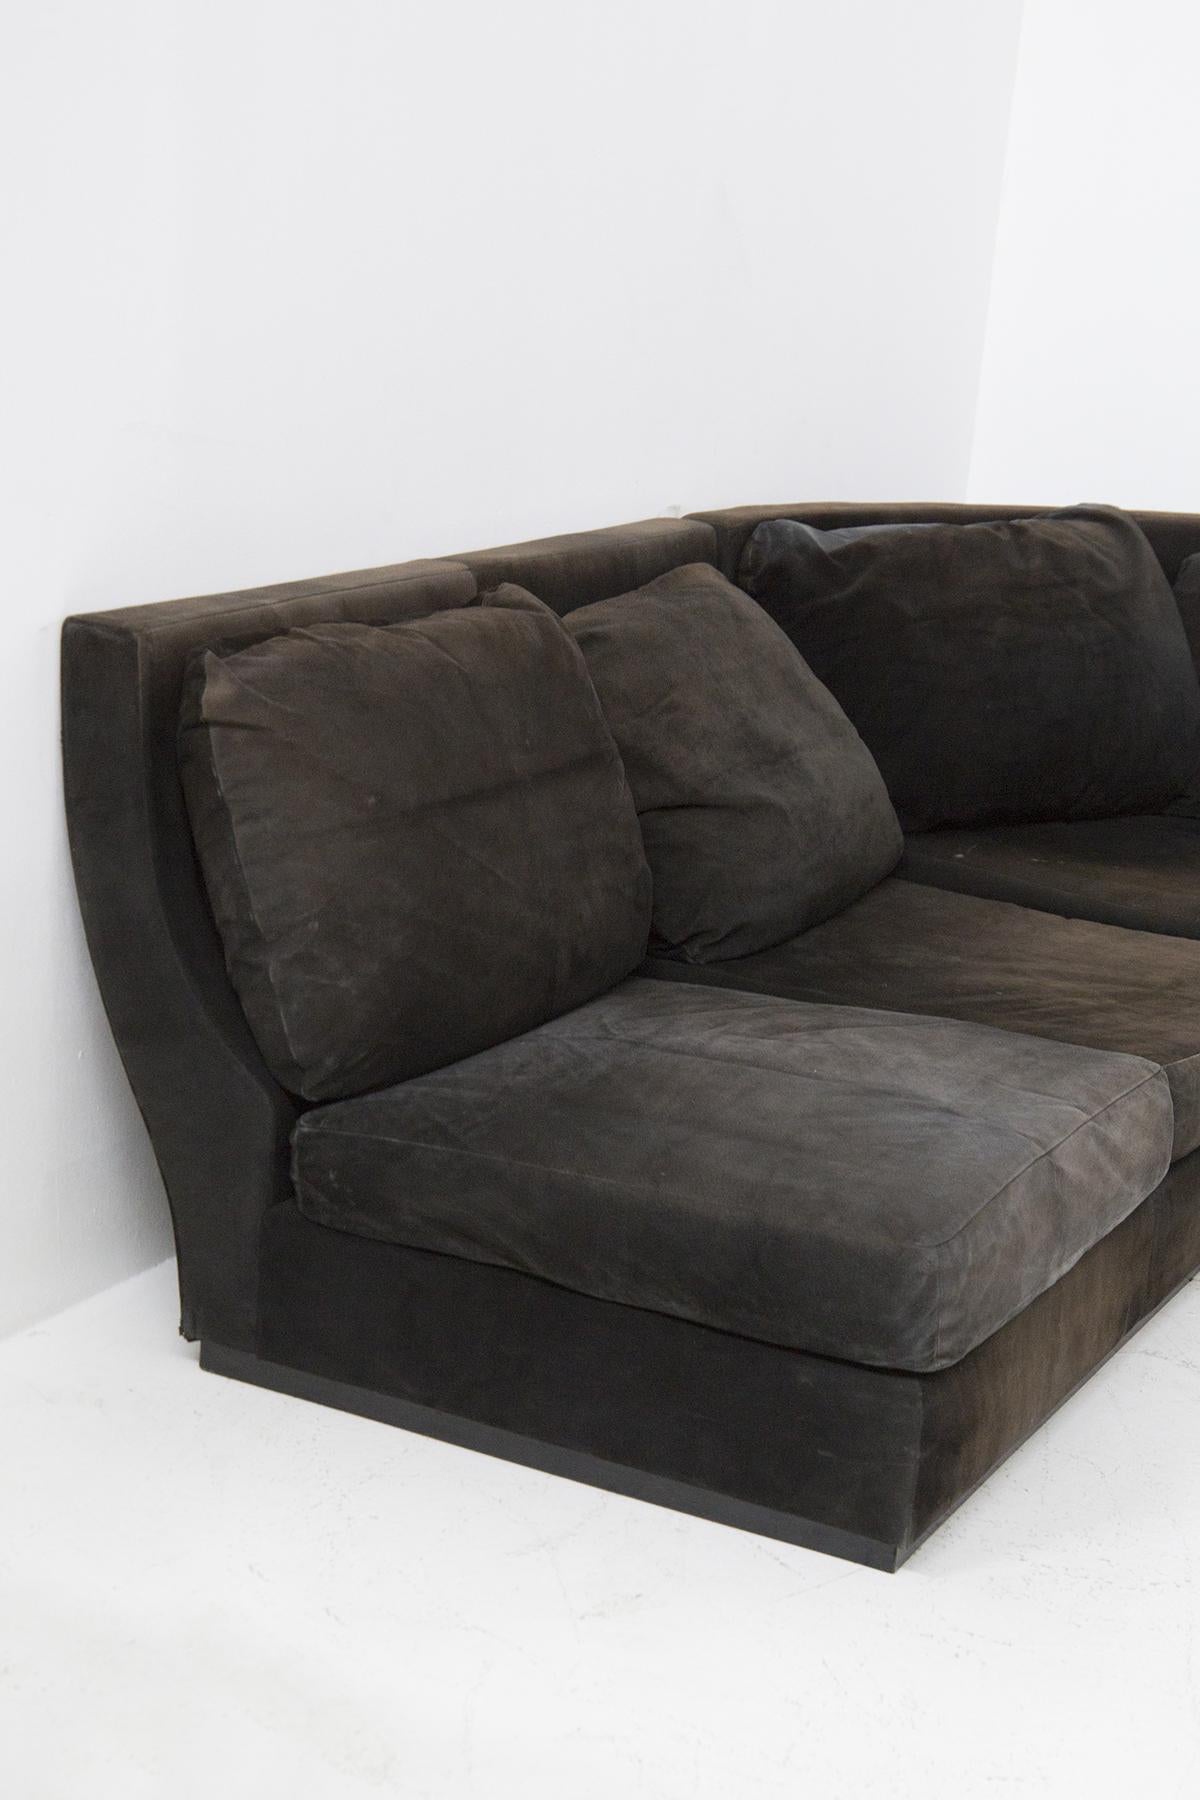 Schönes Ecksofa, entworfen in den 1970er Jahren, aus feiner italienischer Fertigung.
Das Sofa ist eckig, wie Sie sehen können, und besteht vollständig aus schwarzem Alcantara. Es gibt 7 Sitzkissen und 7 Rückenkissen. Der Boden ist recht steif und